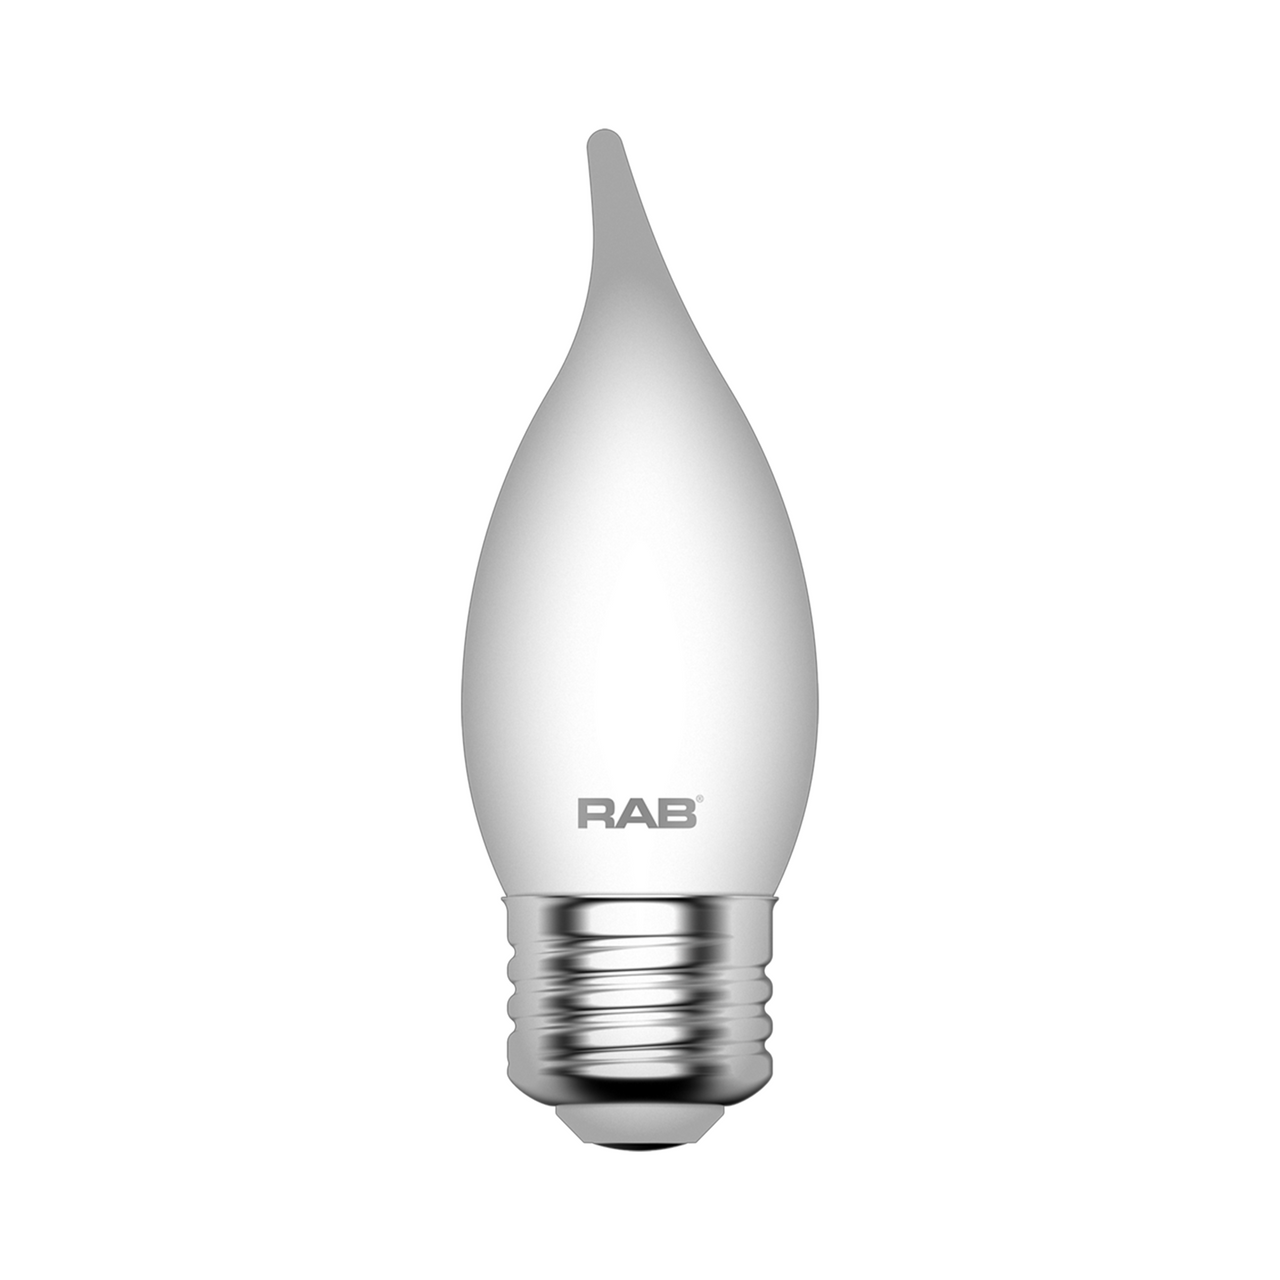 Bedankt aankleden Realistisch LED Chandelier Light - 40W Equal -2700K - RAB BA11-3-E26-927-F-F |  CityLightsUSA.com